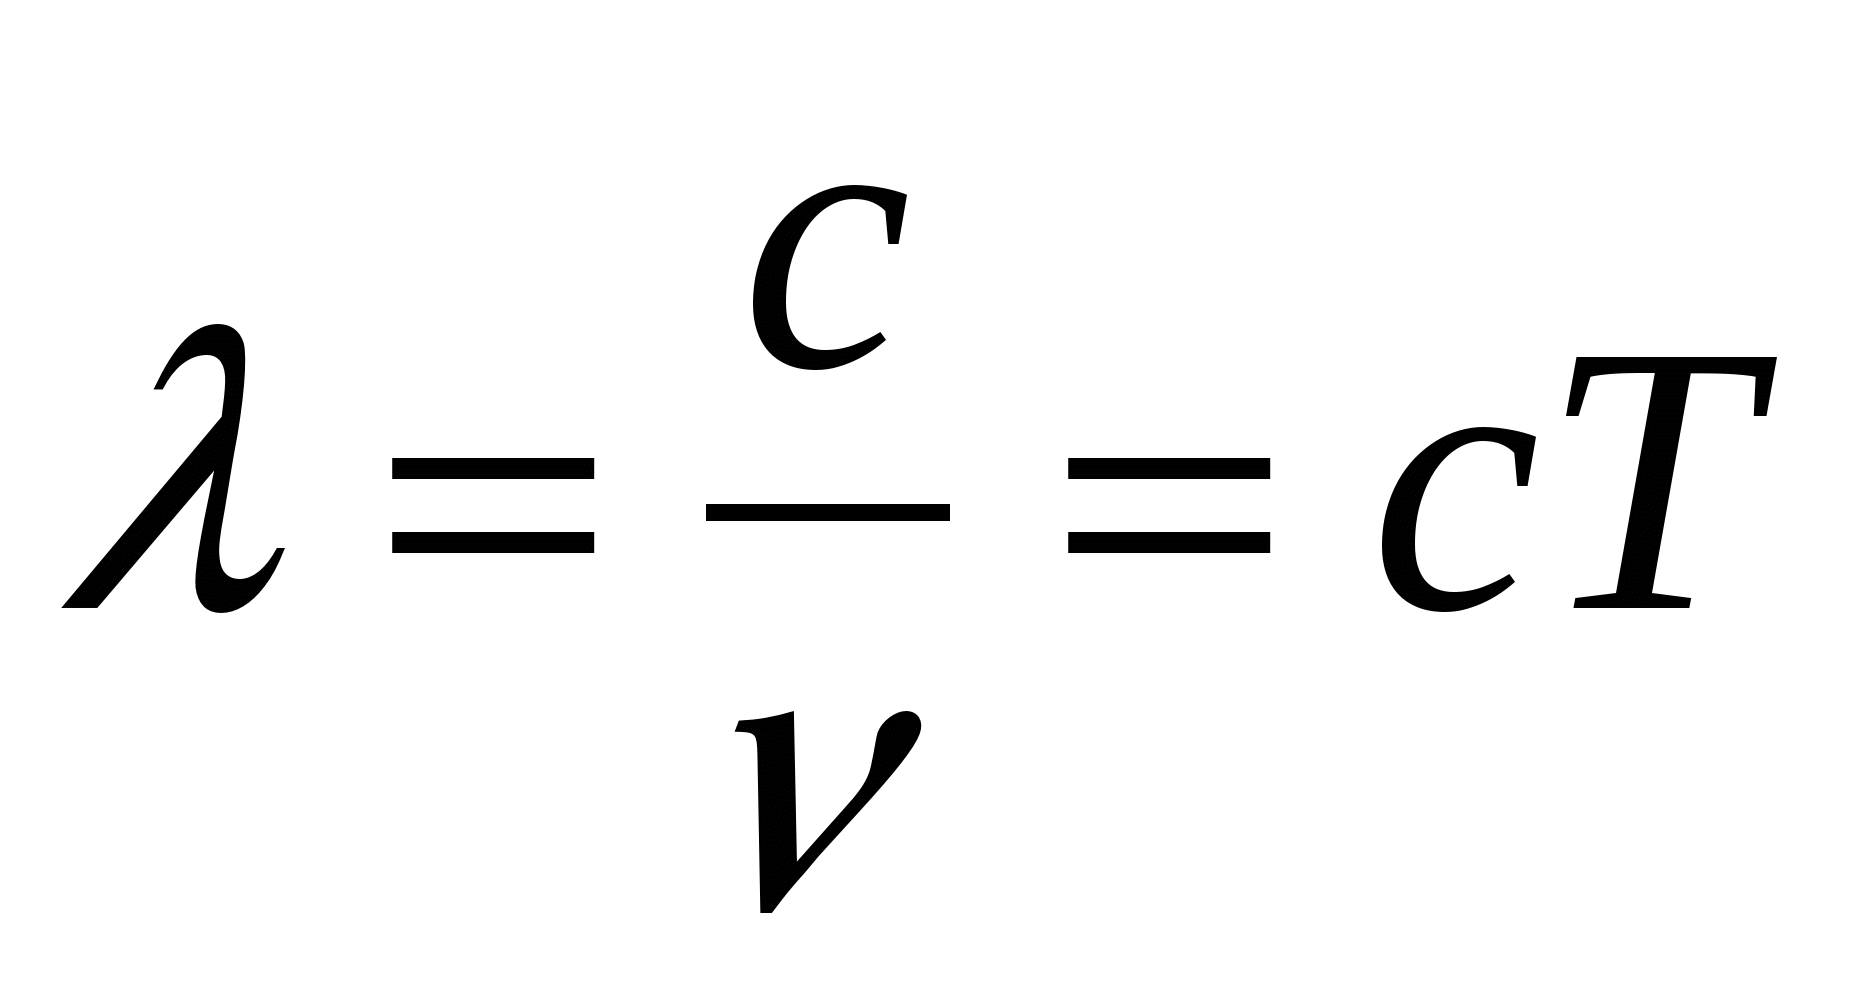 V c г с. Длина волны электромагнитных колебаний формула. Частота электромагнитной волны формула. Частота электромагнитных колебаний формула. Длина волны электромагнитного излучения формула.